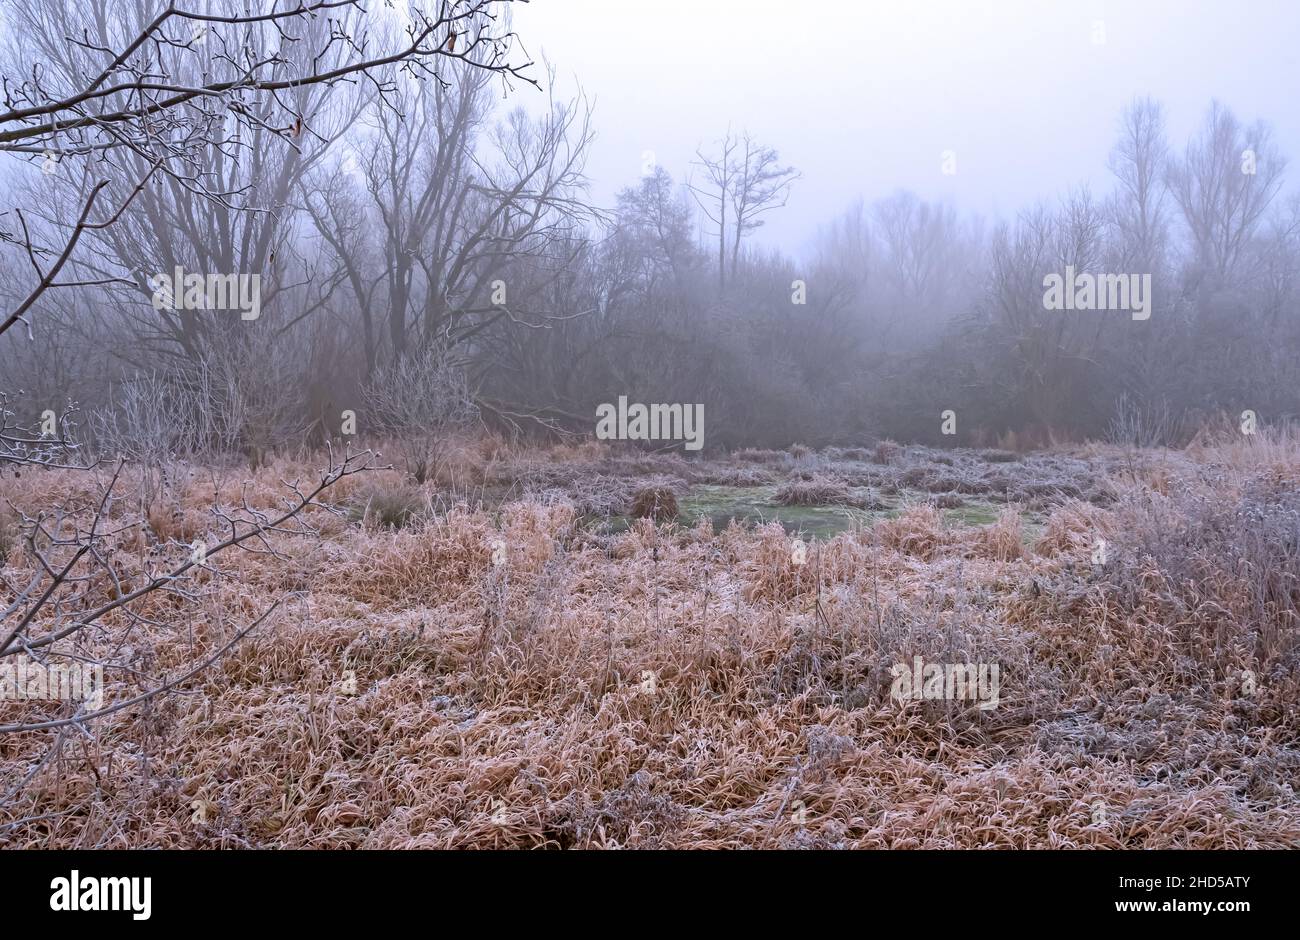 Der erste Frost hat den kleinen grünen Tümpel mit dünnem eis bedeckt auch die Pflanzen rund herum wirken winterlich, Nebel verstärkt das kalte Gefühl Foto de stock